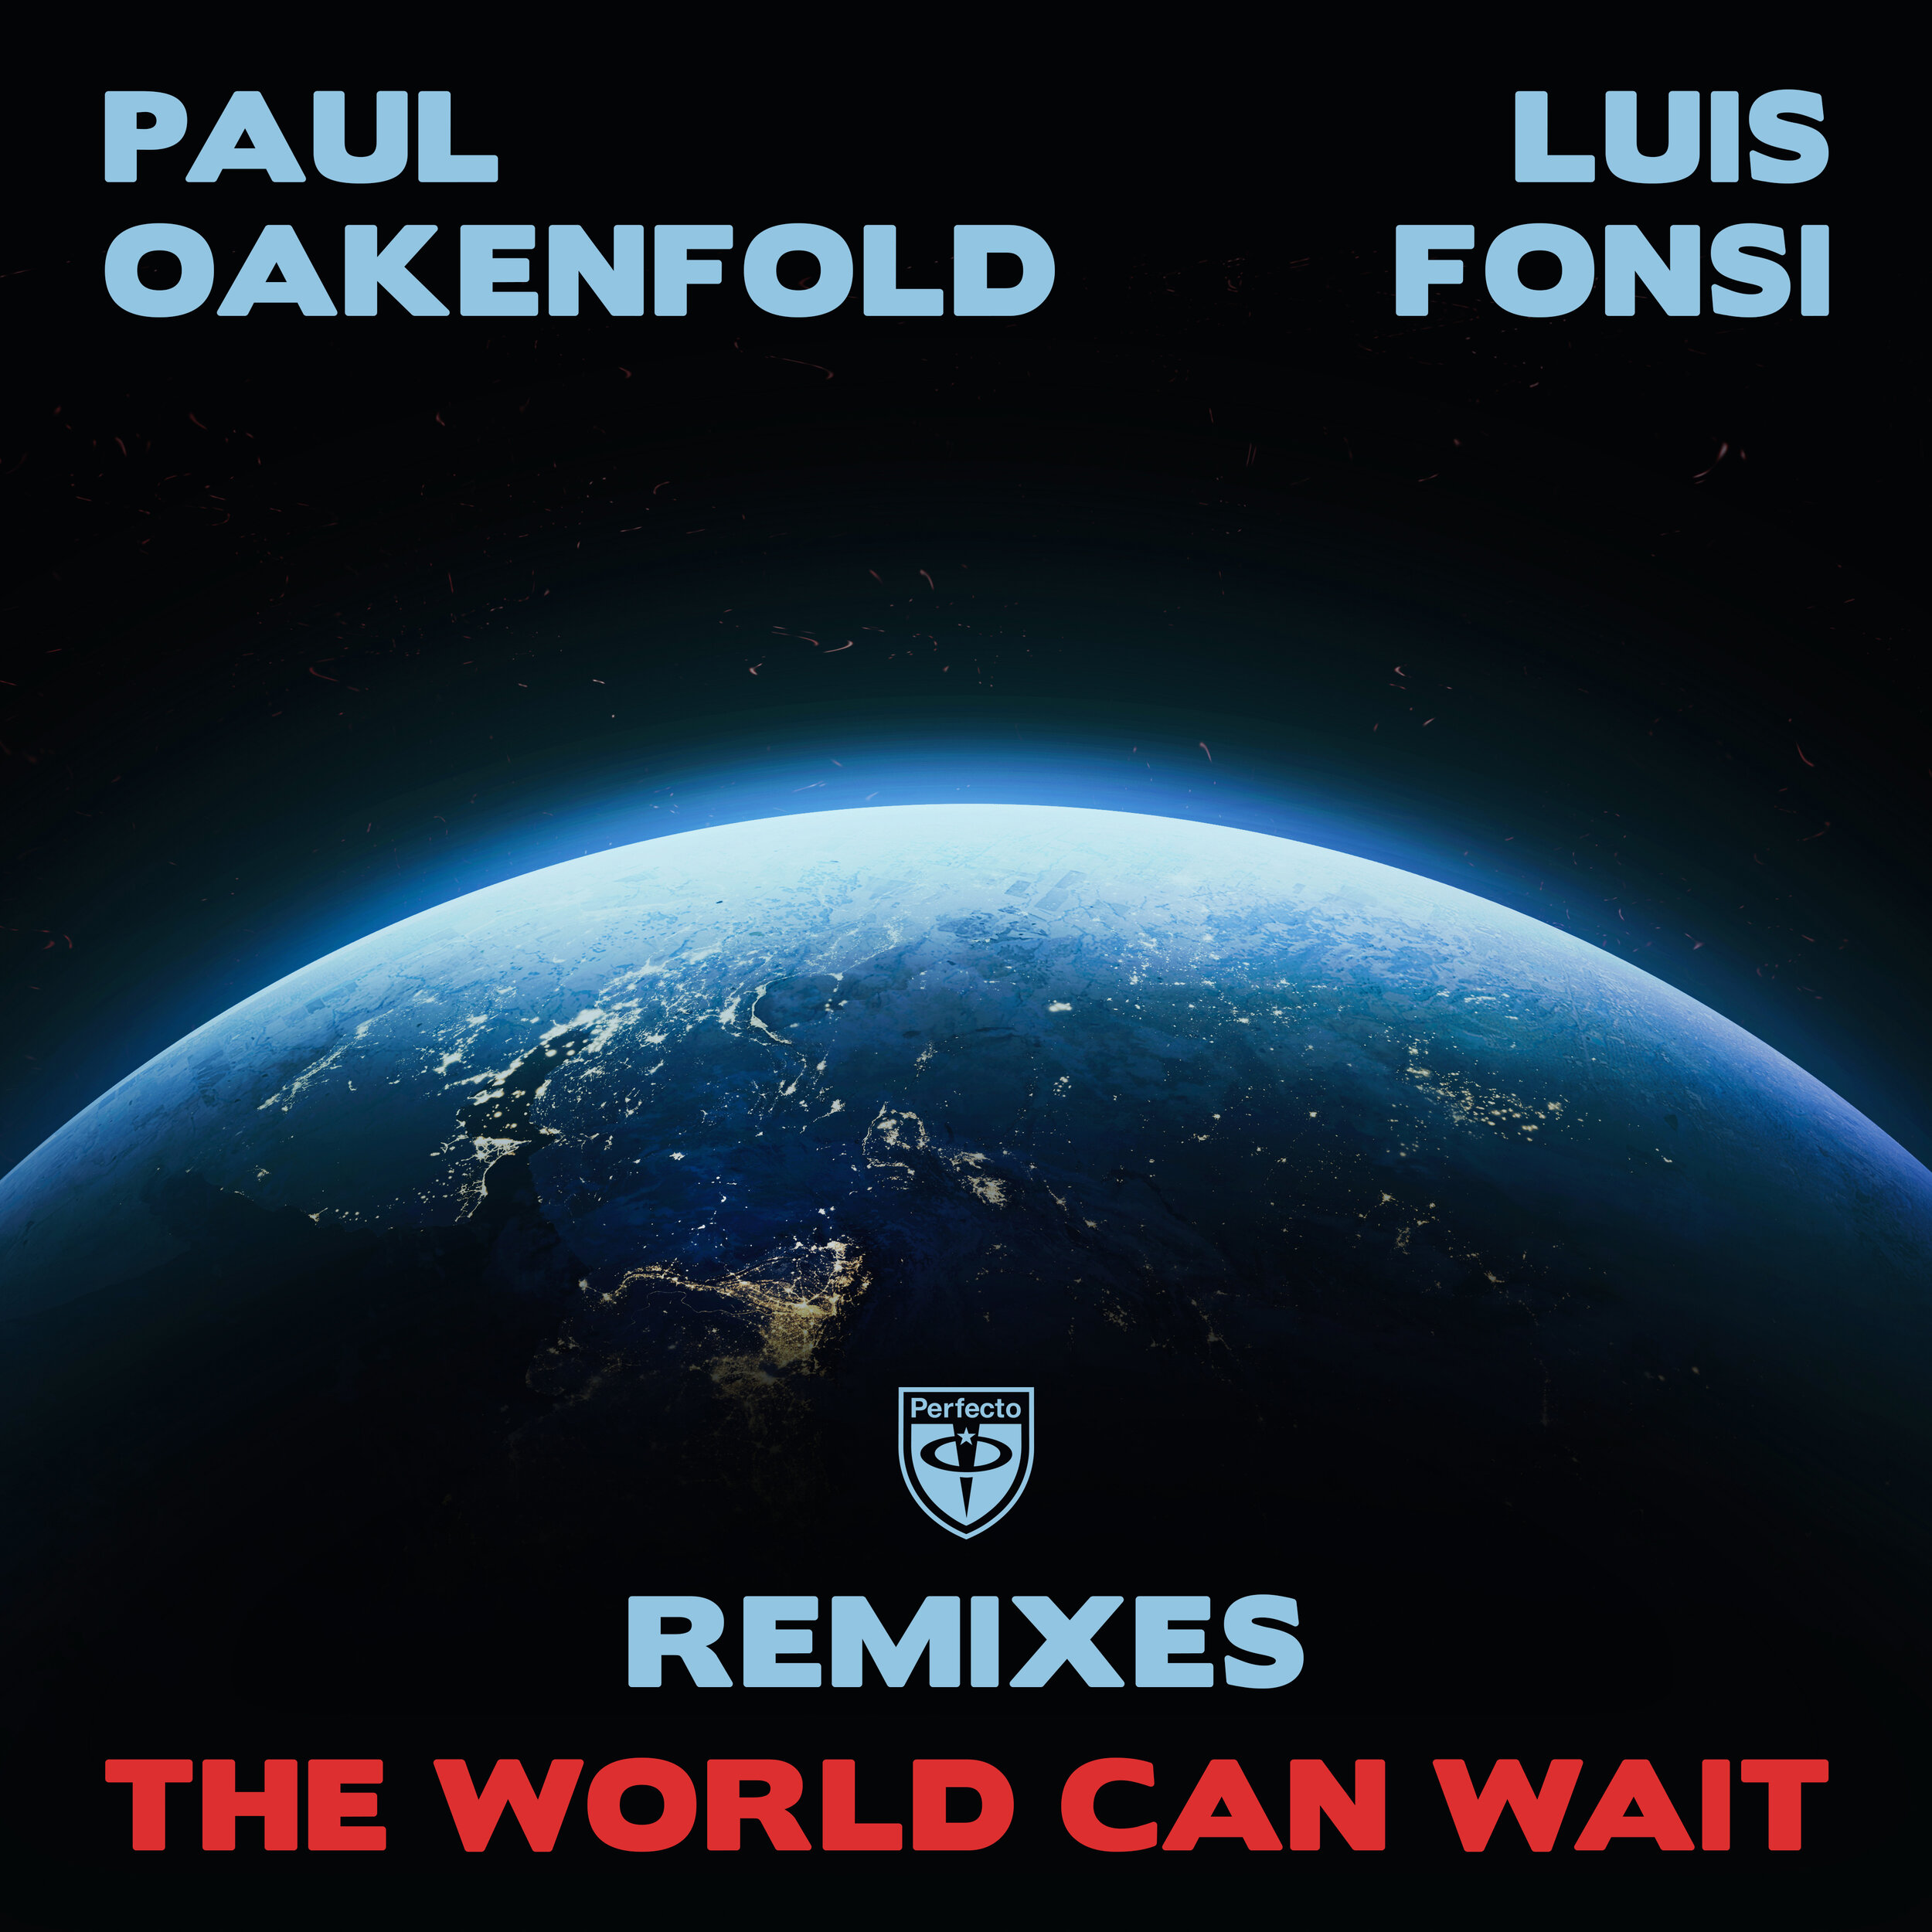 The World Can Wait Remixes Artwork 4000x4000.jpg